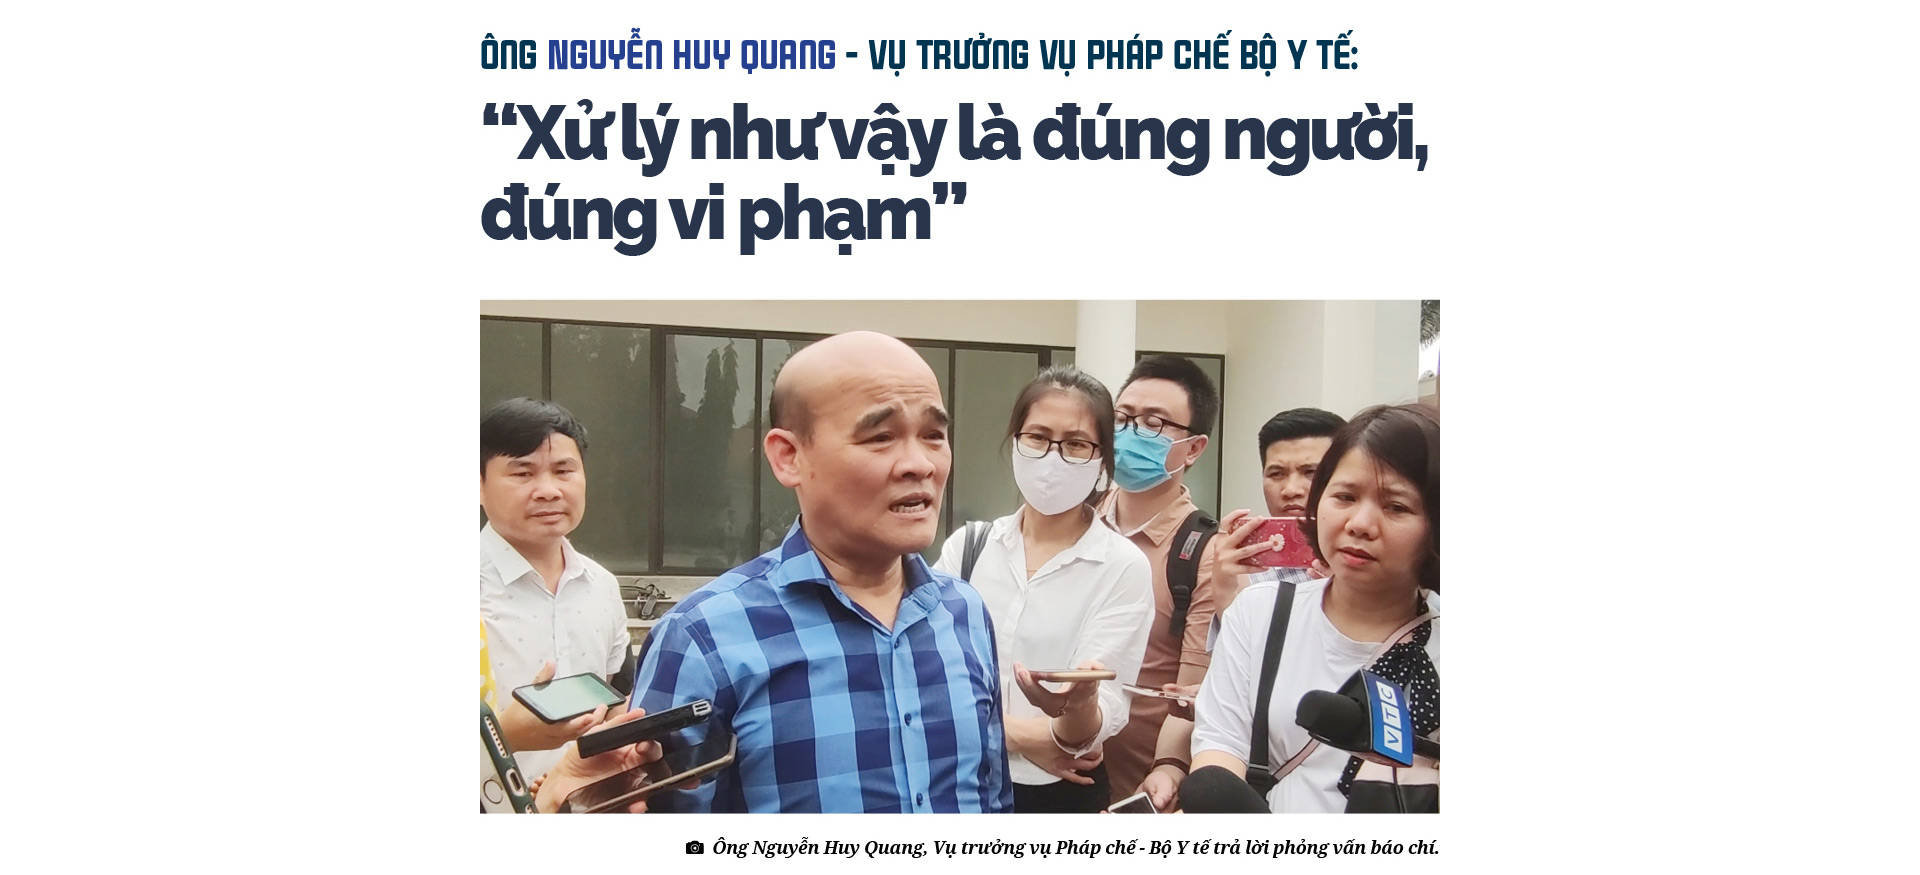 Tiến sĩ - Bác sĩ Vương Văn Tịnh, nguyên Giám đốc Bệnh viện tâm thần T.Ư 1:&quot;Tôi không đáng bị cách chức&quot;  - Ảnh 18.